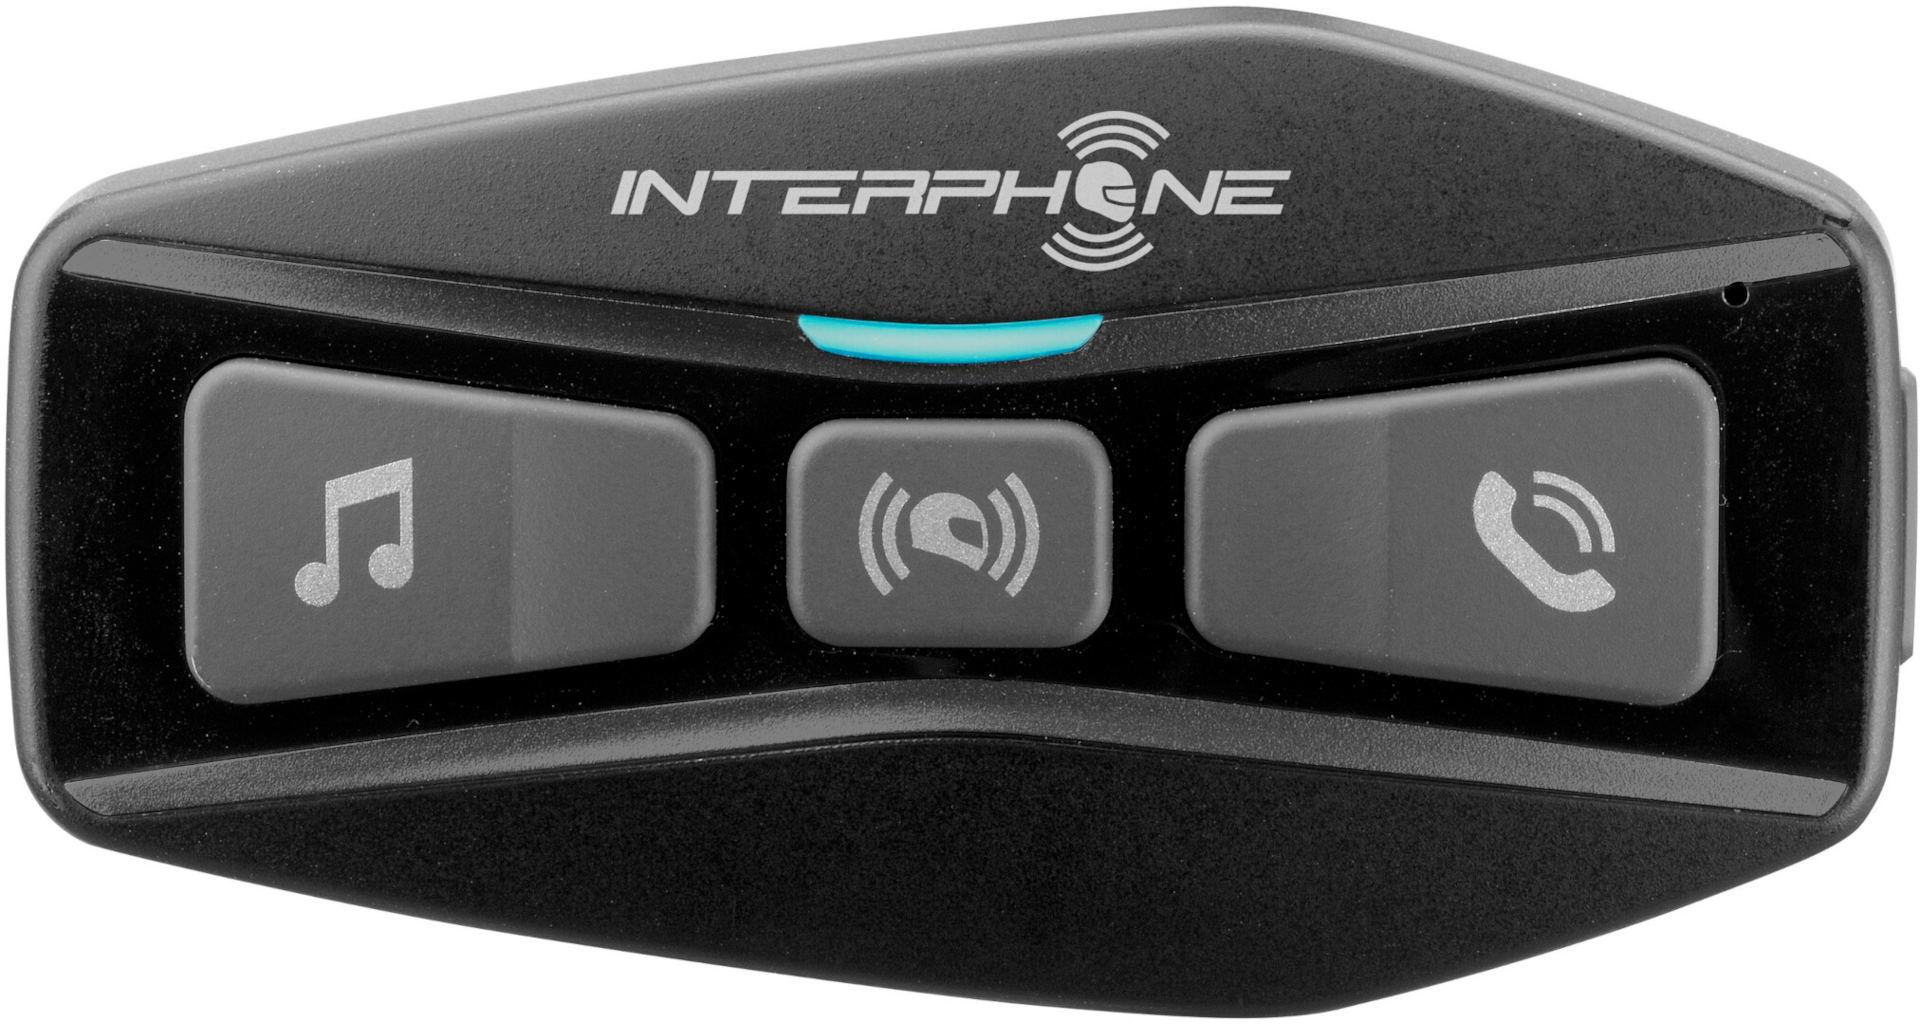 Image of Interphone U-com 2 Pacchetto singolo sistema di comunicazione Bluetooth, nero